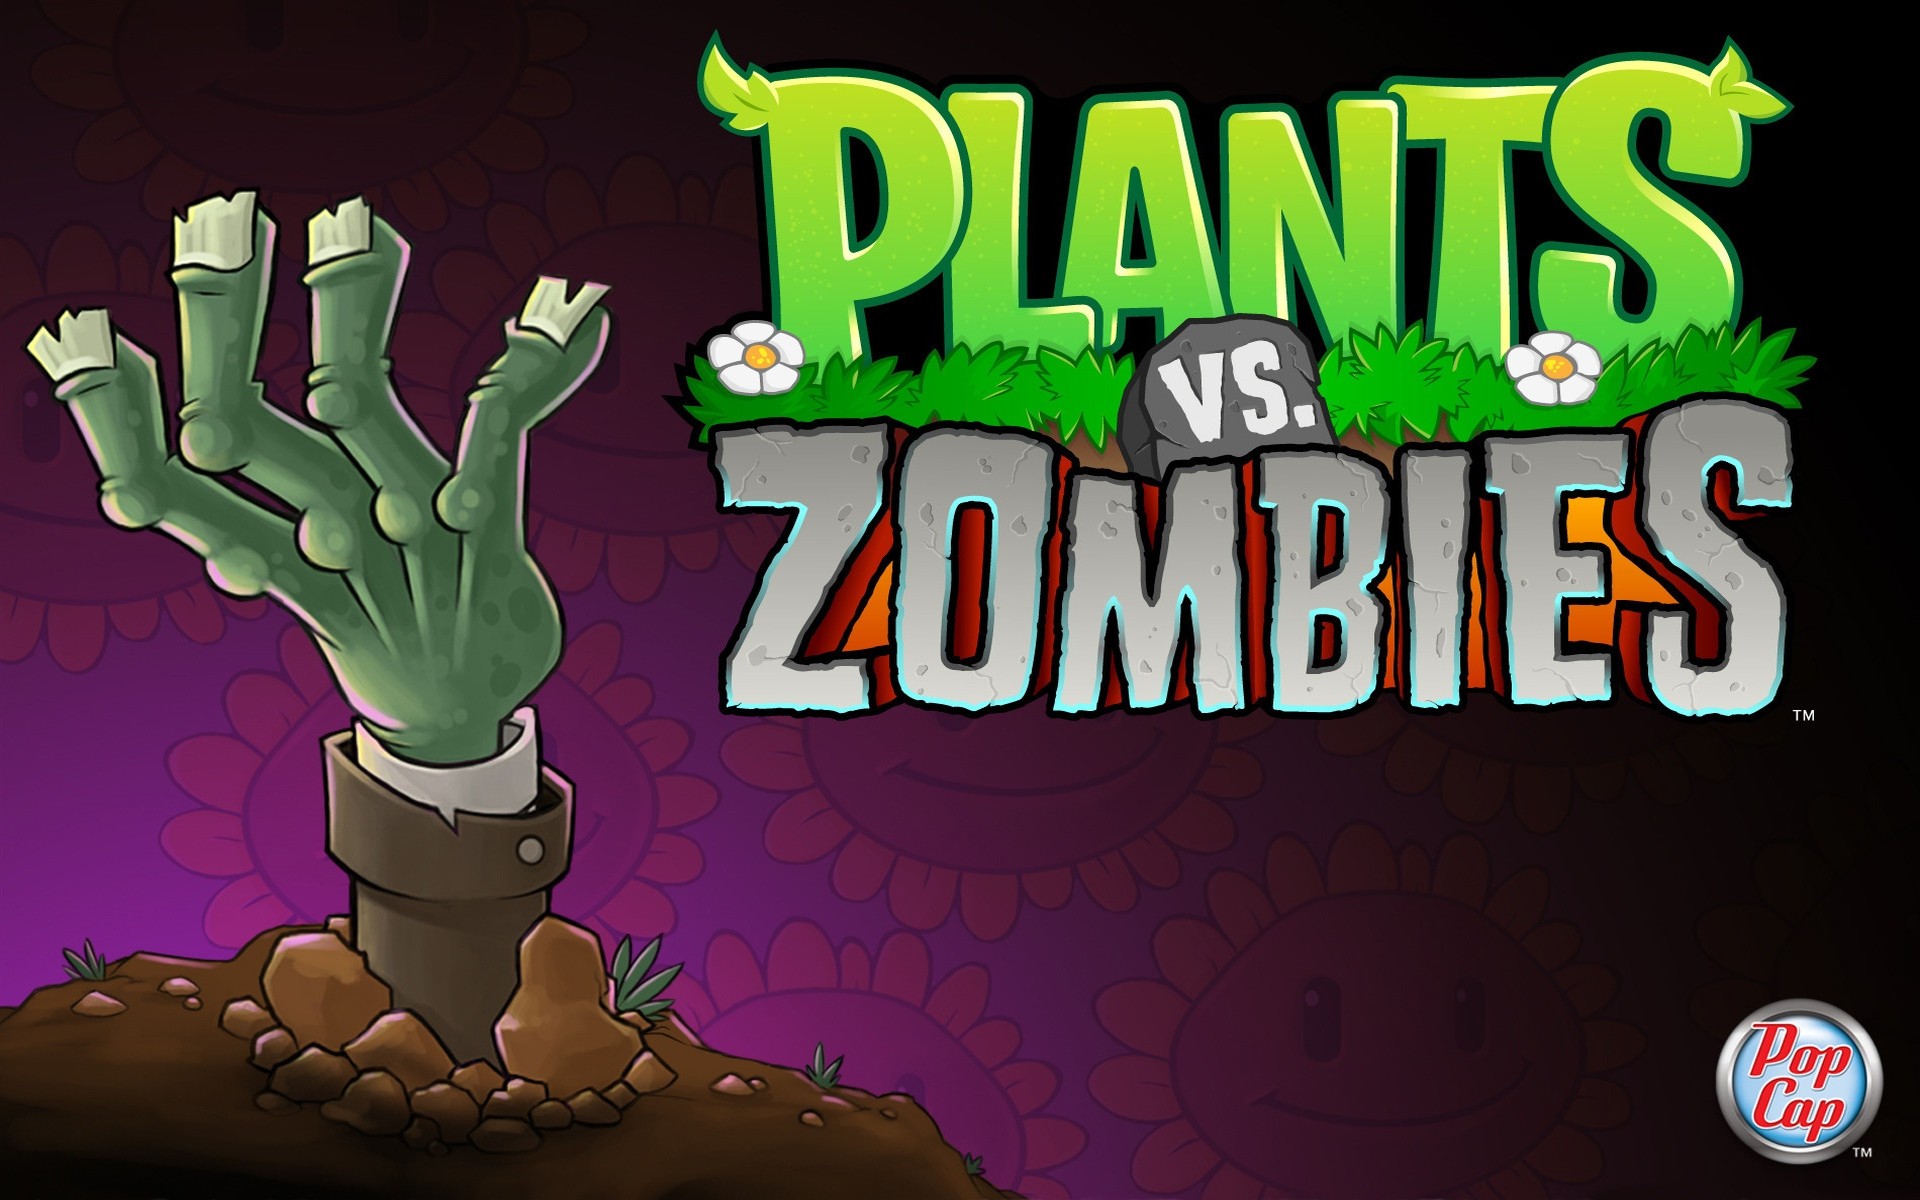 Ютуб против зомби. Растения против зомби превью. Игра плантс зомби. Растения против зомби 2 превью. Plants vs Zombies мини игры.